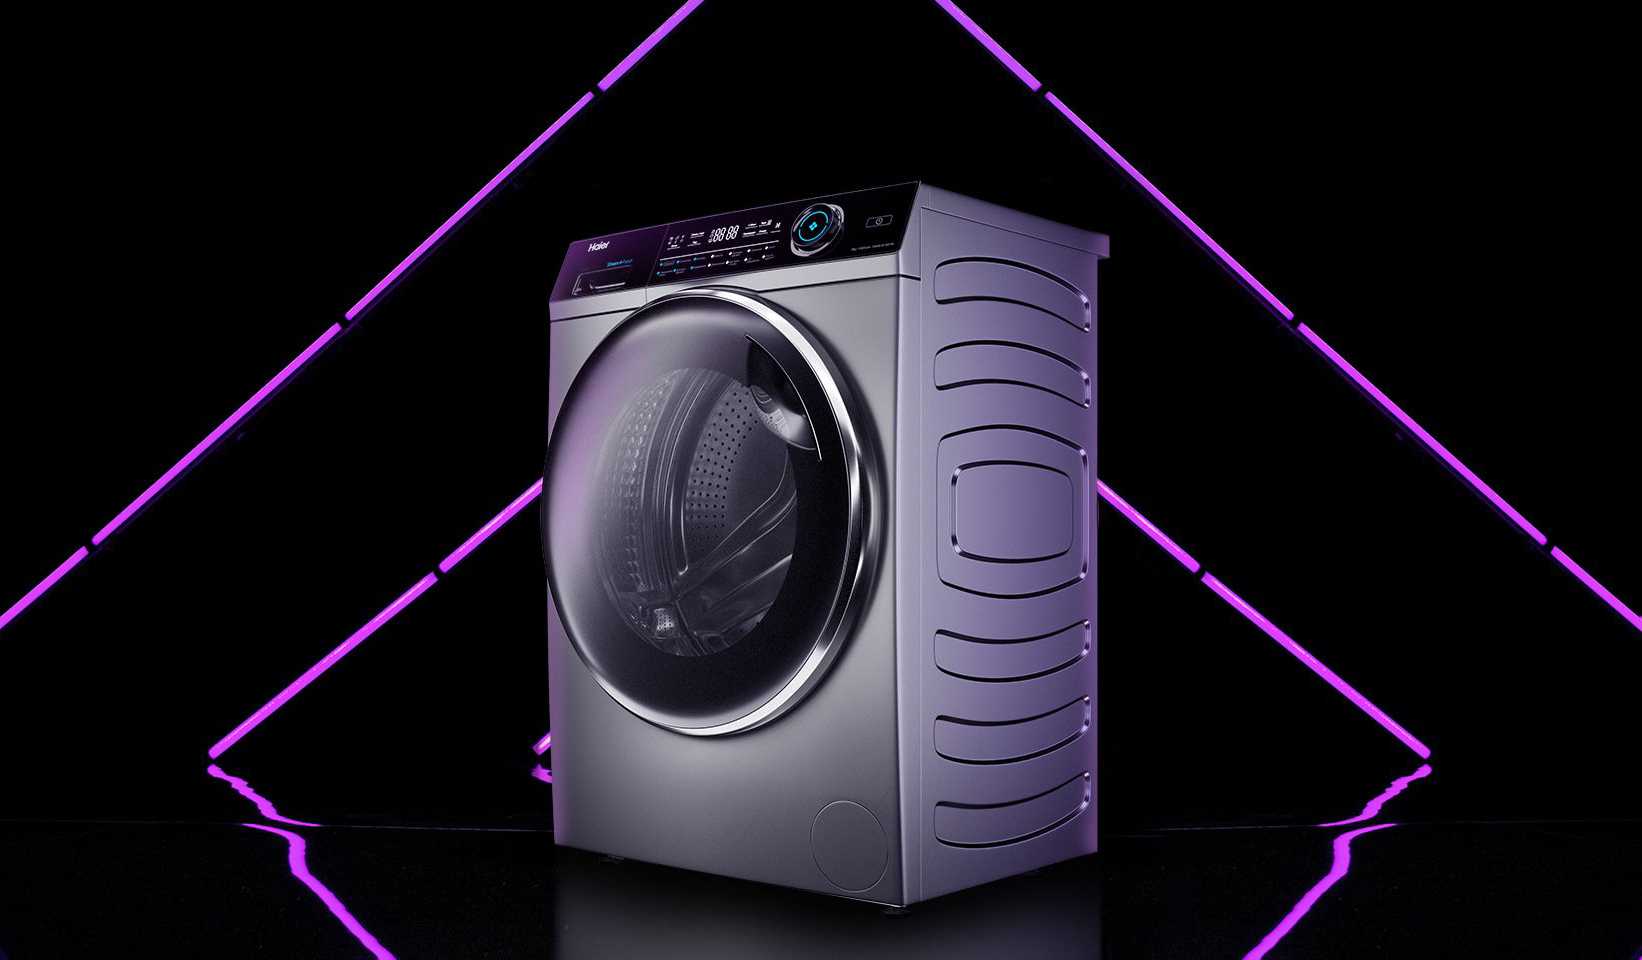 Стираем эффективно и экономно: лучшие стиральные машины 2019-2020 года с низким энергопотреблением